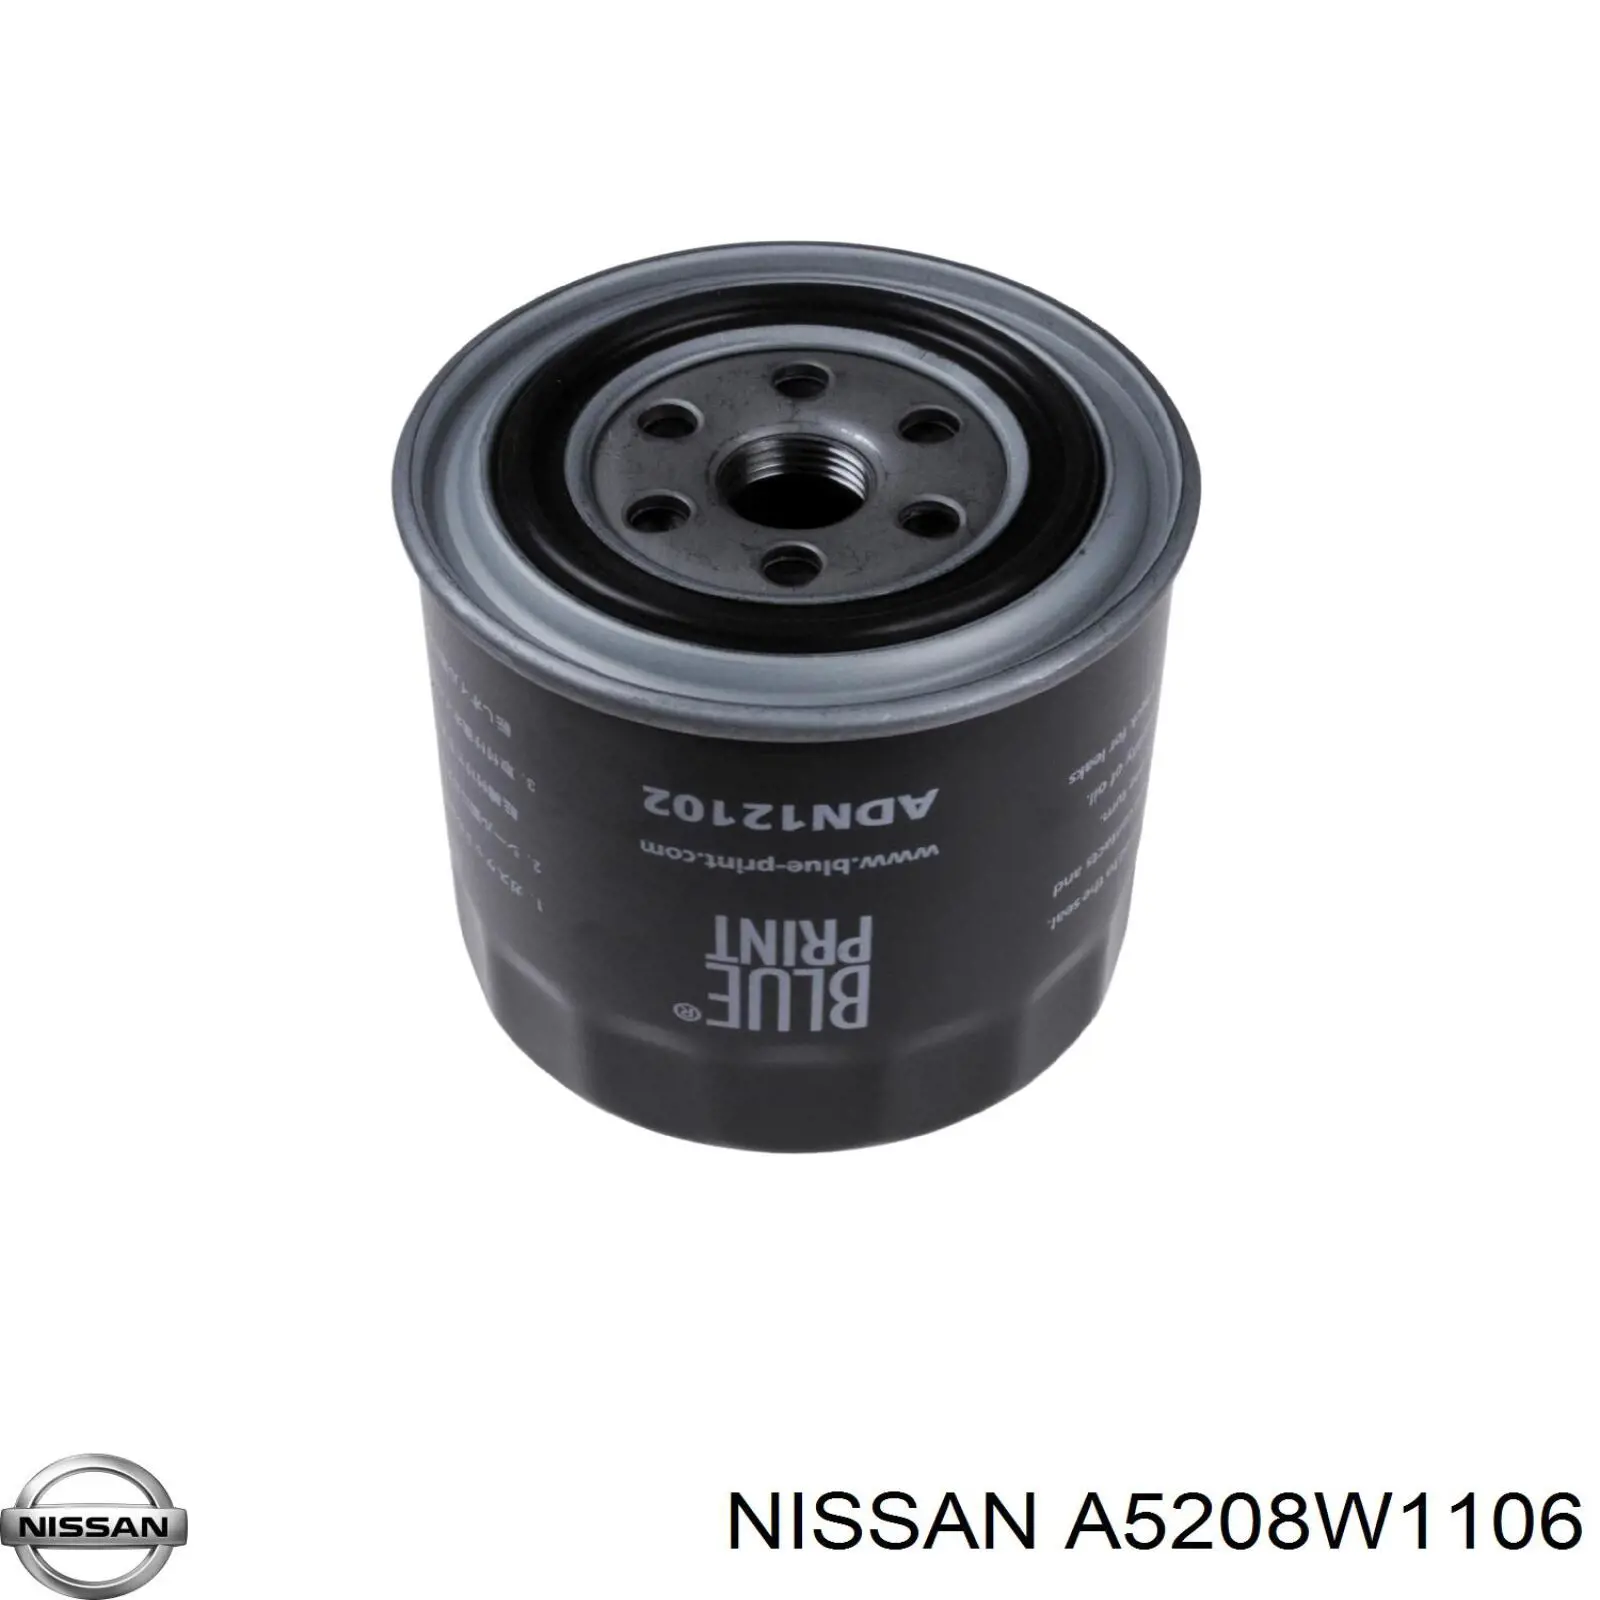 A5208W1106 Nissan filtro de aceite